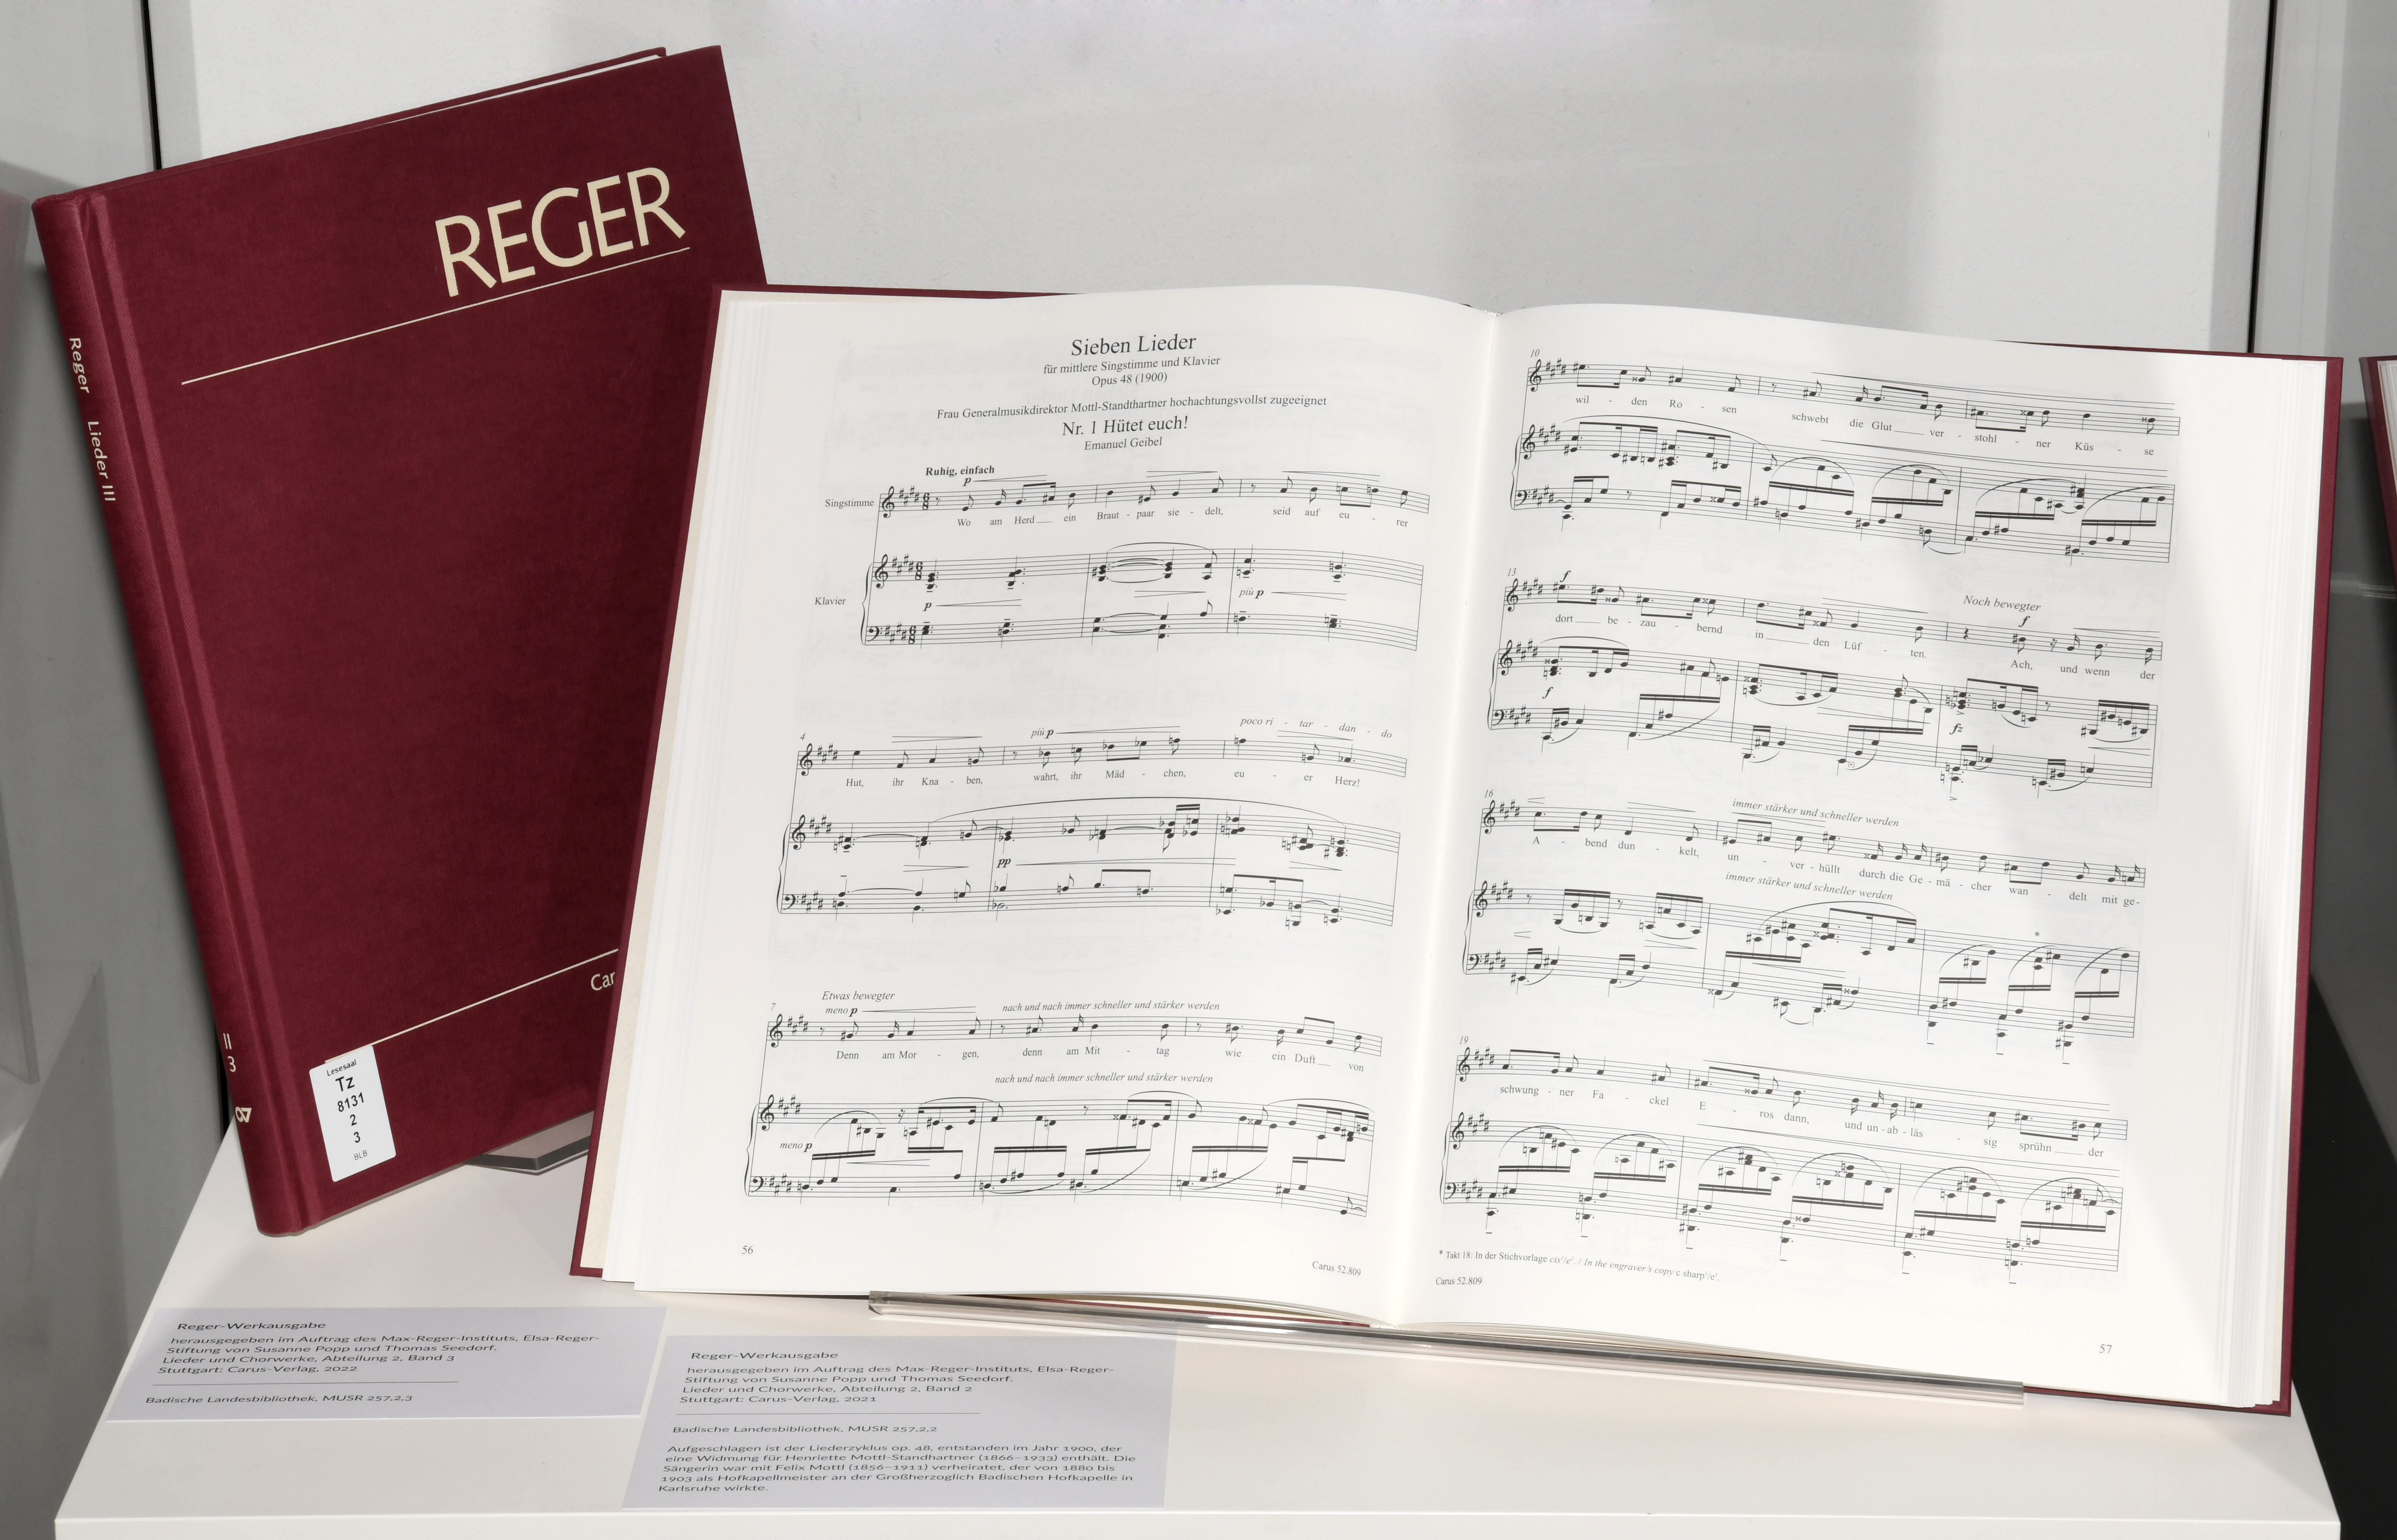 Das Foto zeigt die Reger-Werkausgabe und die Noten des ersten der Sieben Lieder für mittlere Singstimme und Klavier, opus 48 von Max Reger.